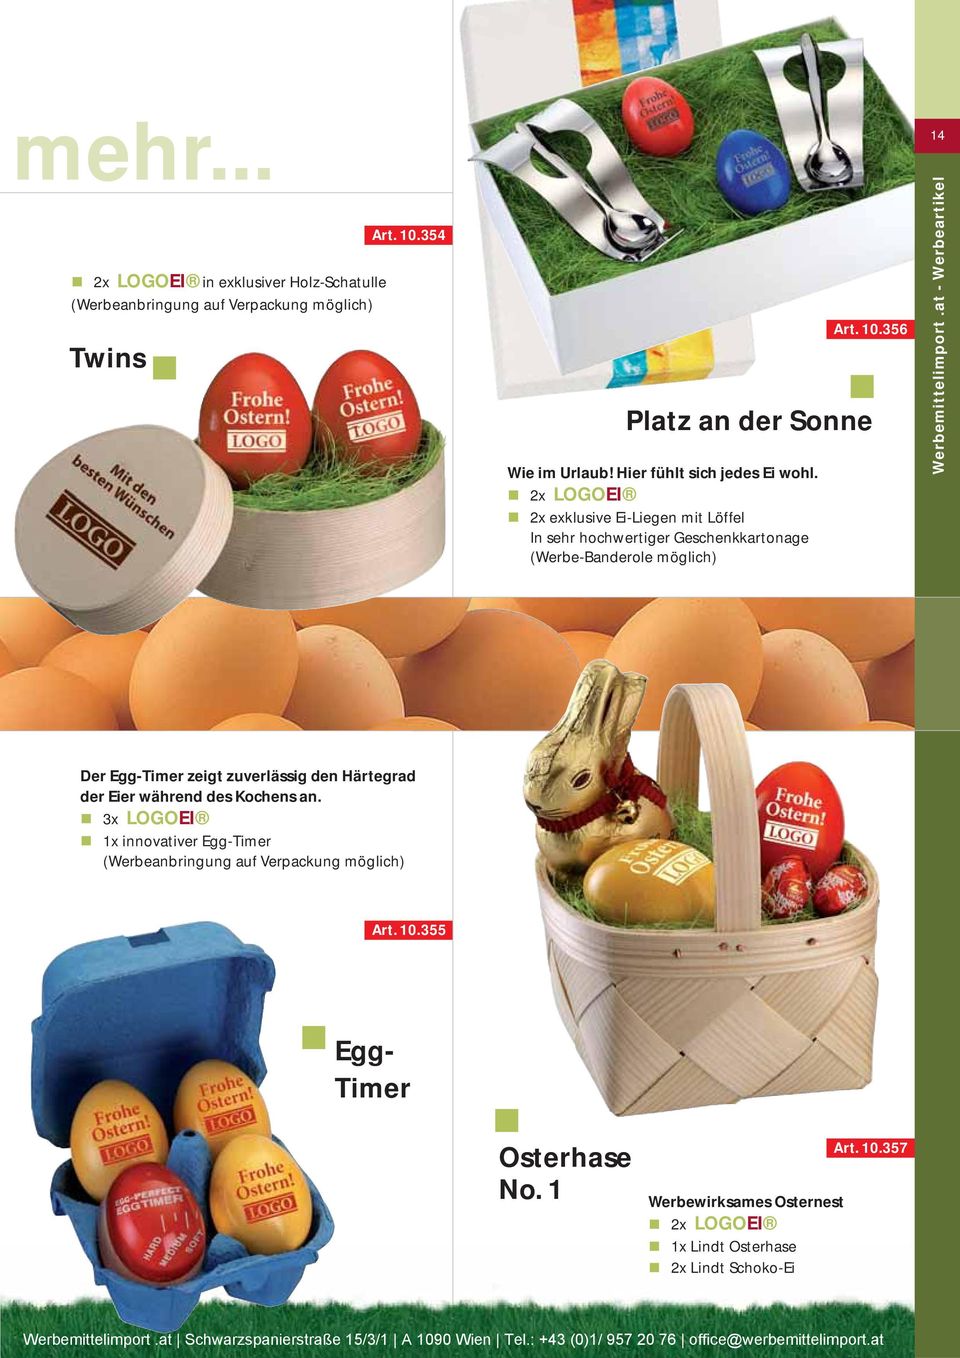 2x EI 2x exklusive Ei-Liegen mit Löffel In sehr hochwertiger Geschenkkartonage (Werbe-Banderole möglich) 14 Der Egg-Timer zeigt zuverlässig den Härtegrad der Eier